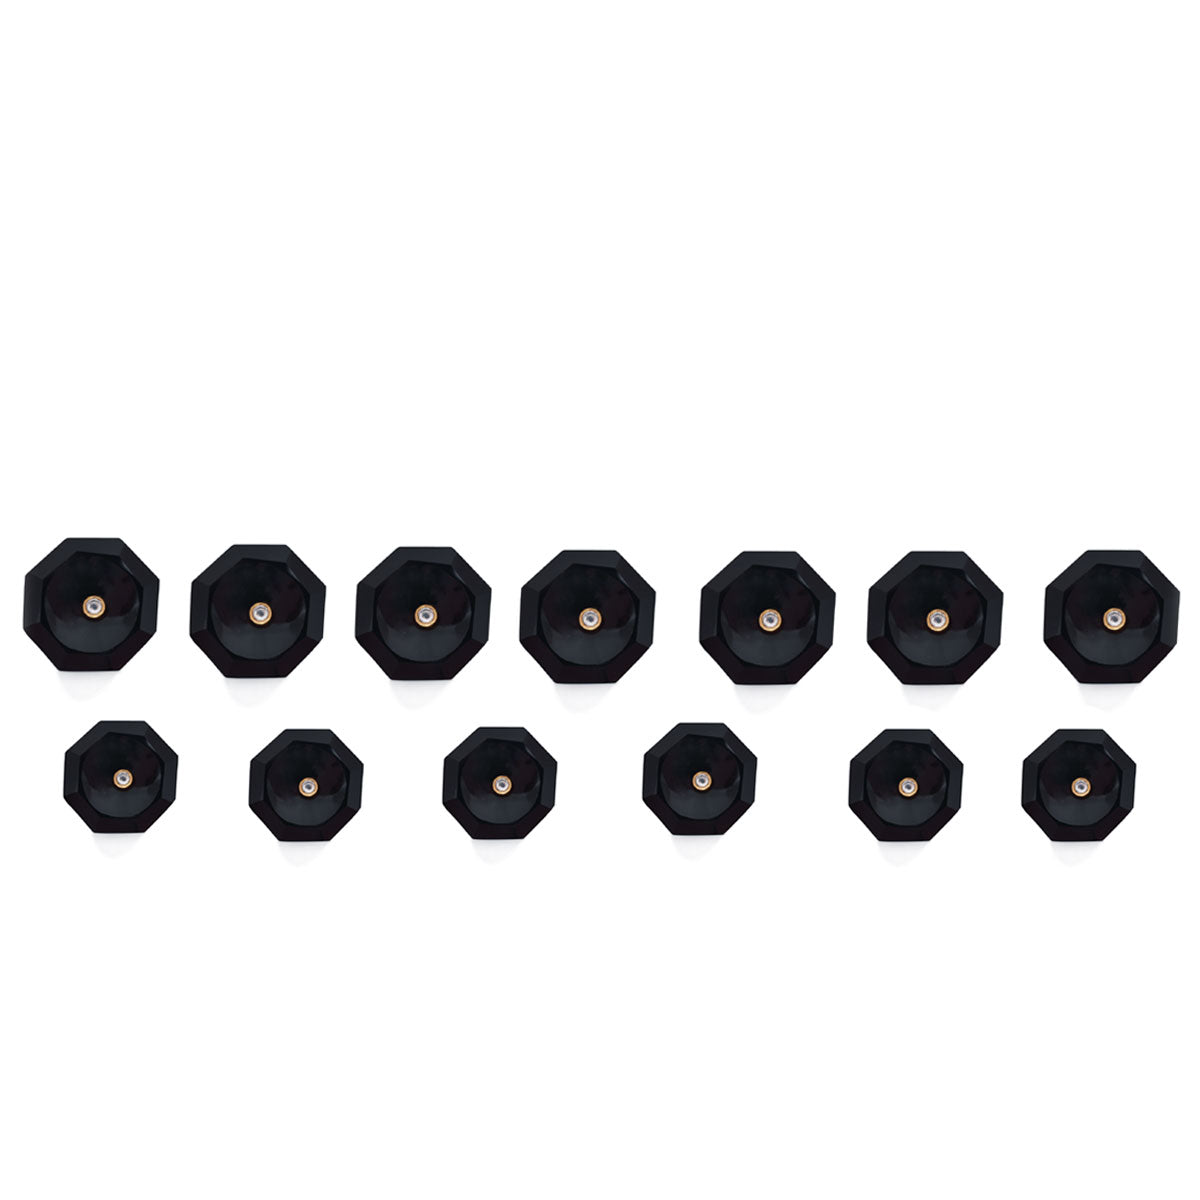 Concave Black Onyx Buttons